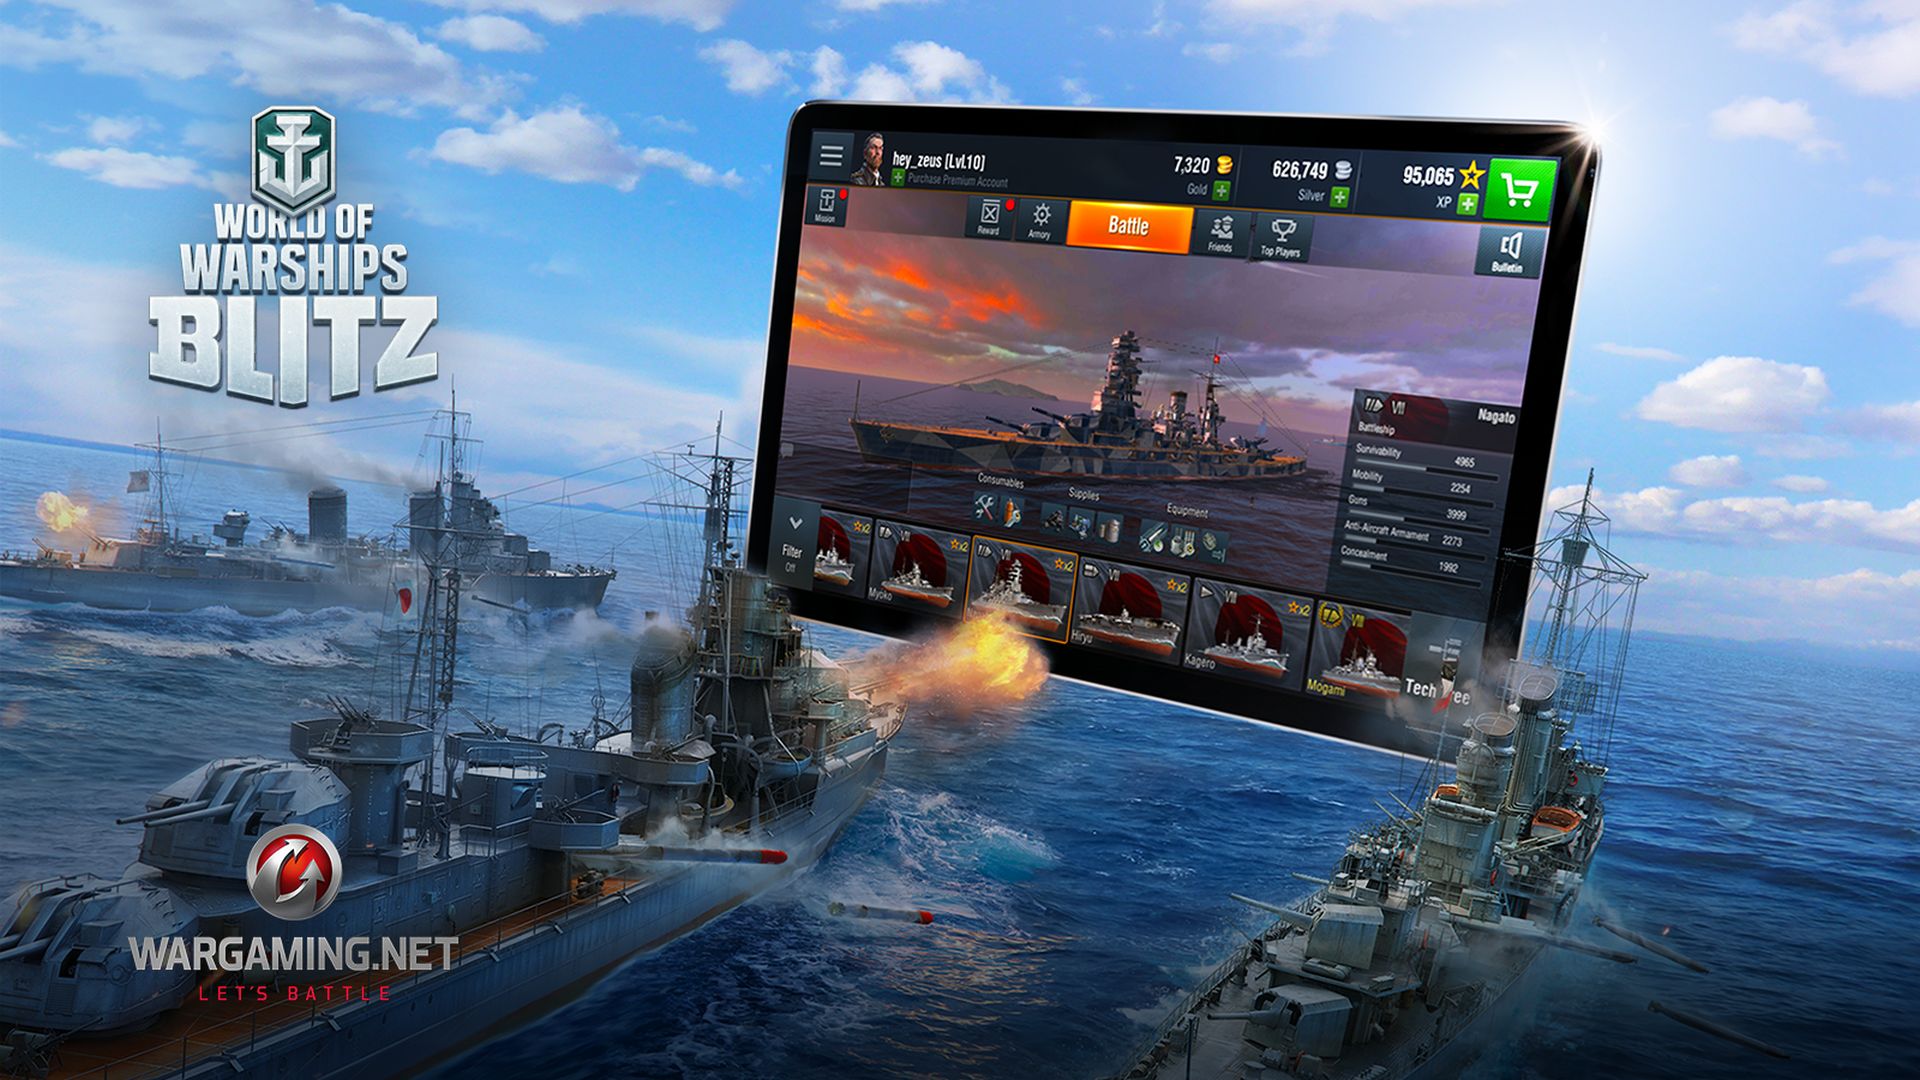 Das Schiffs-MMO World of Warships gibt’s jetzt auch als Mobile-Game